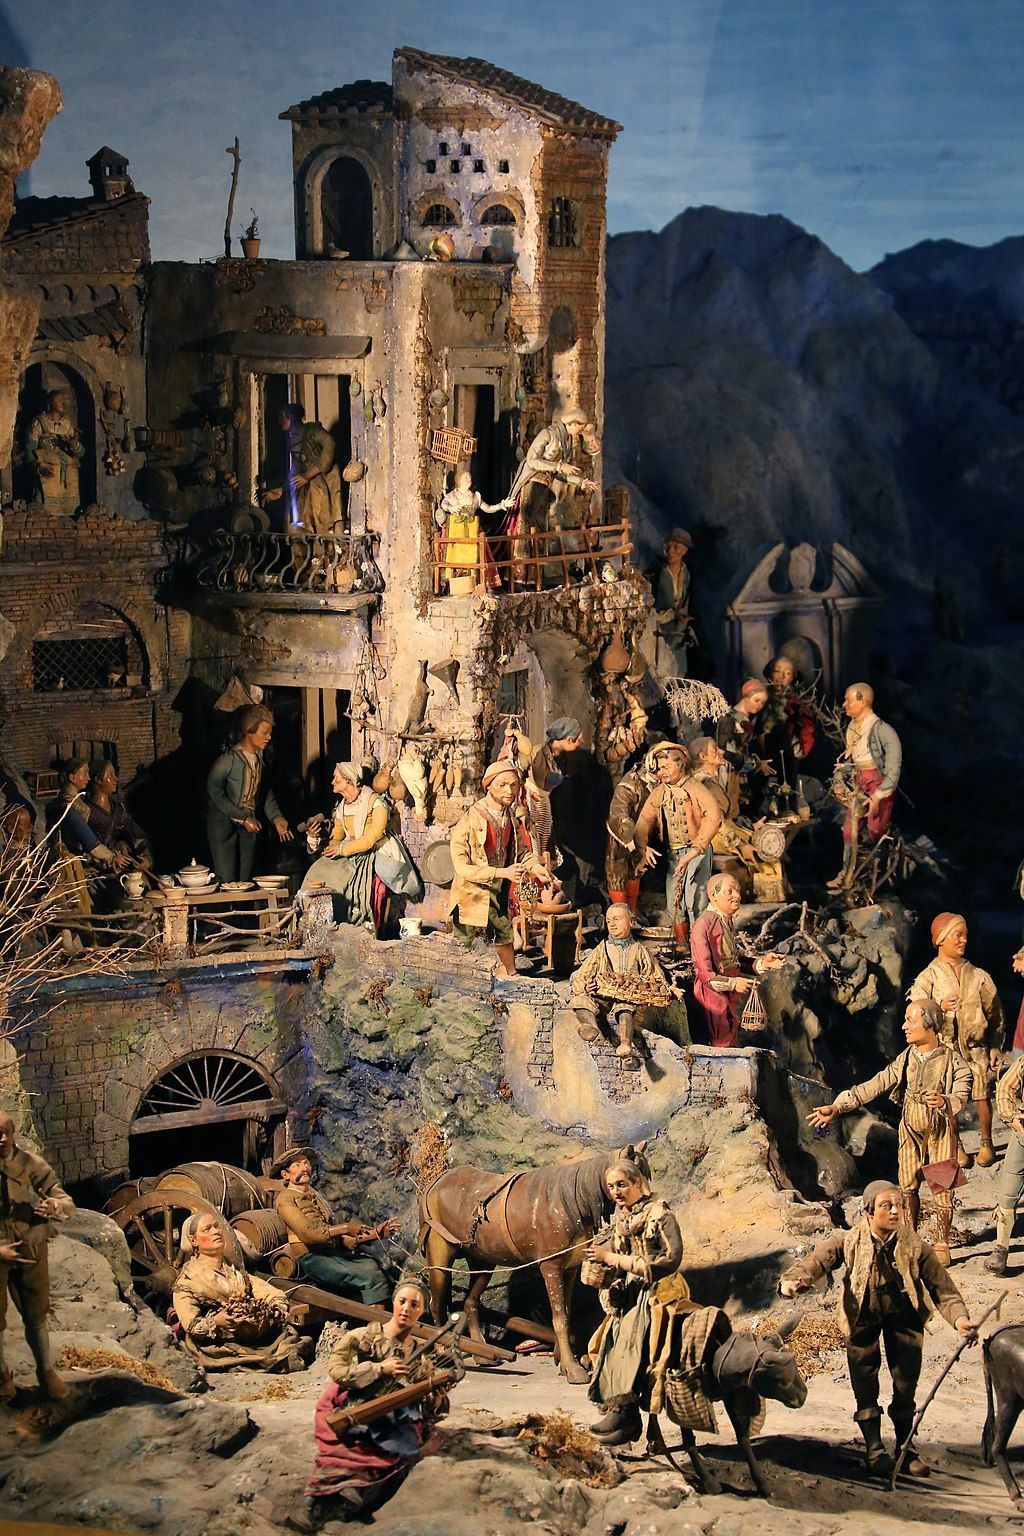 Neapolitan Nativity scene at Santa Chiara in Naples